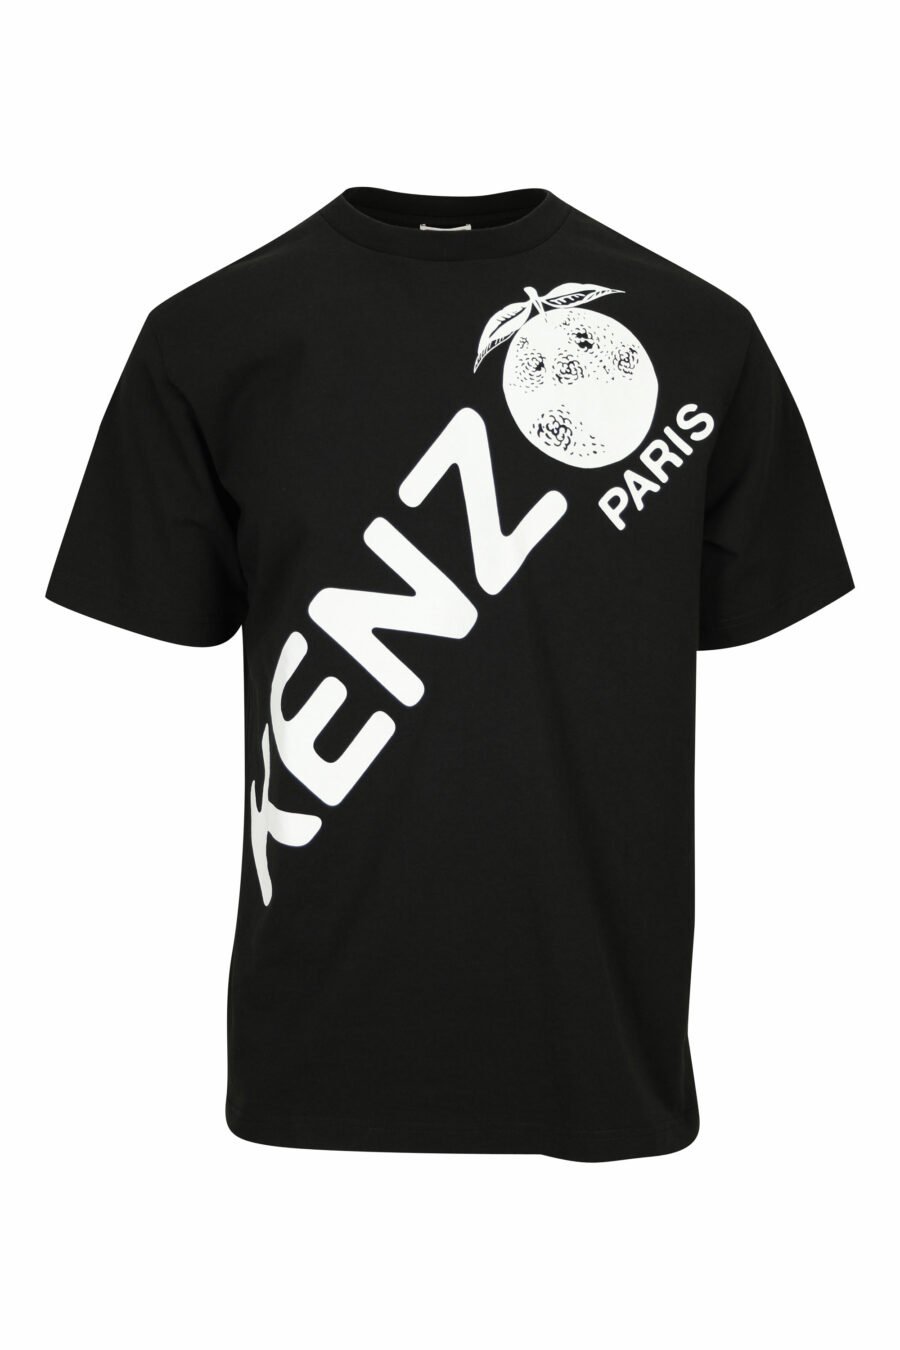 Black T-shirt with diagonal maxilogo "kenzo orange" - 3612230626997